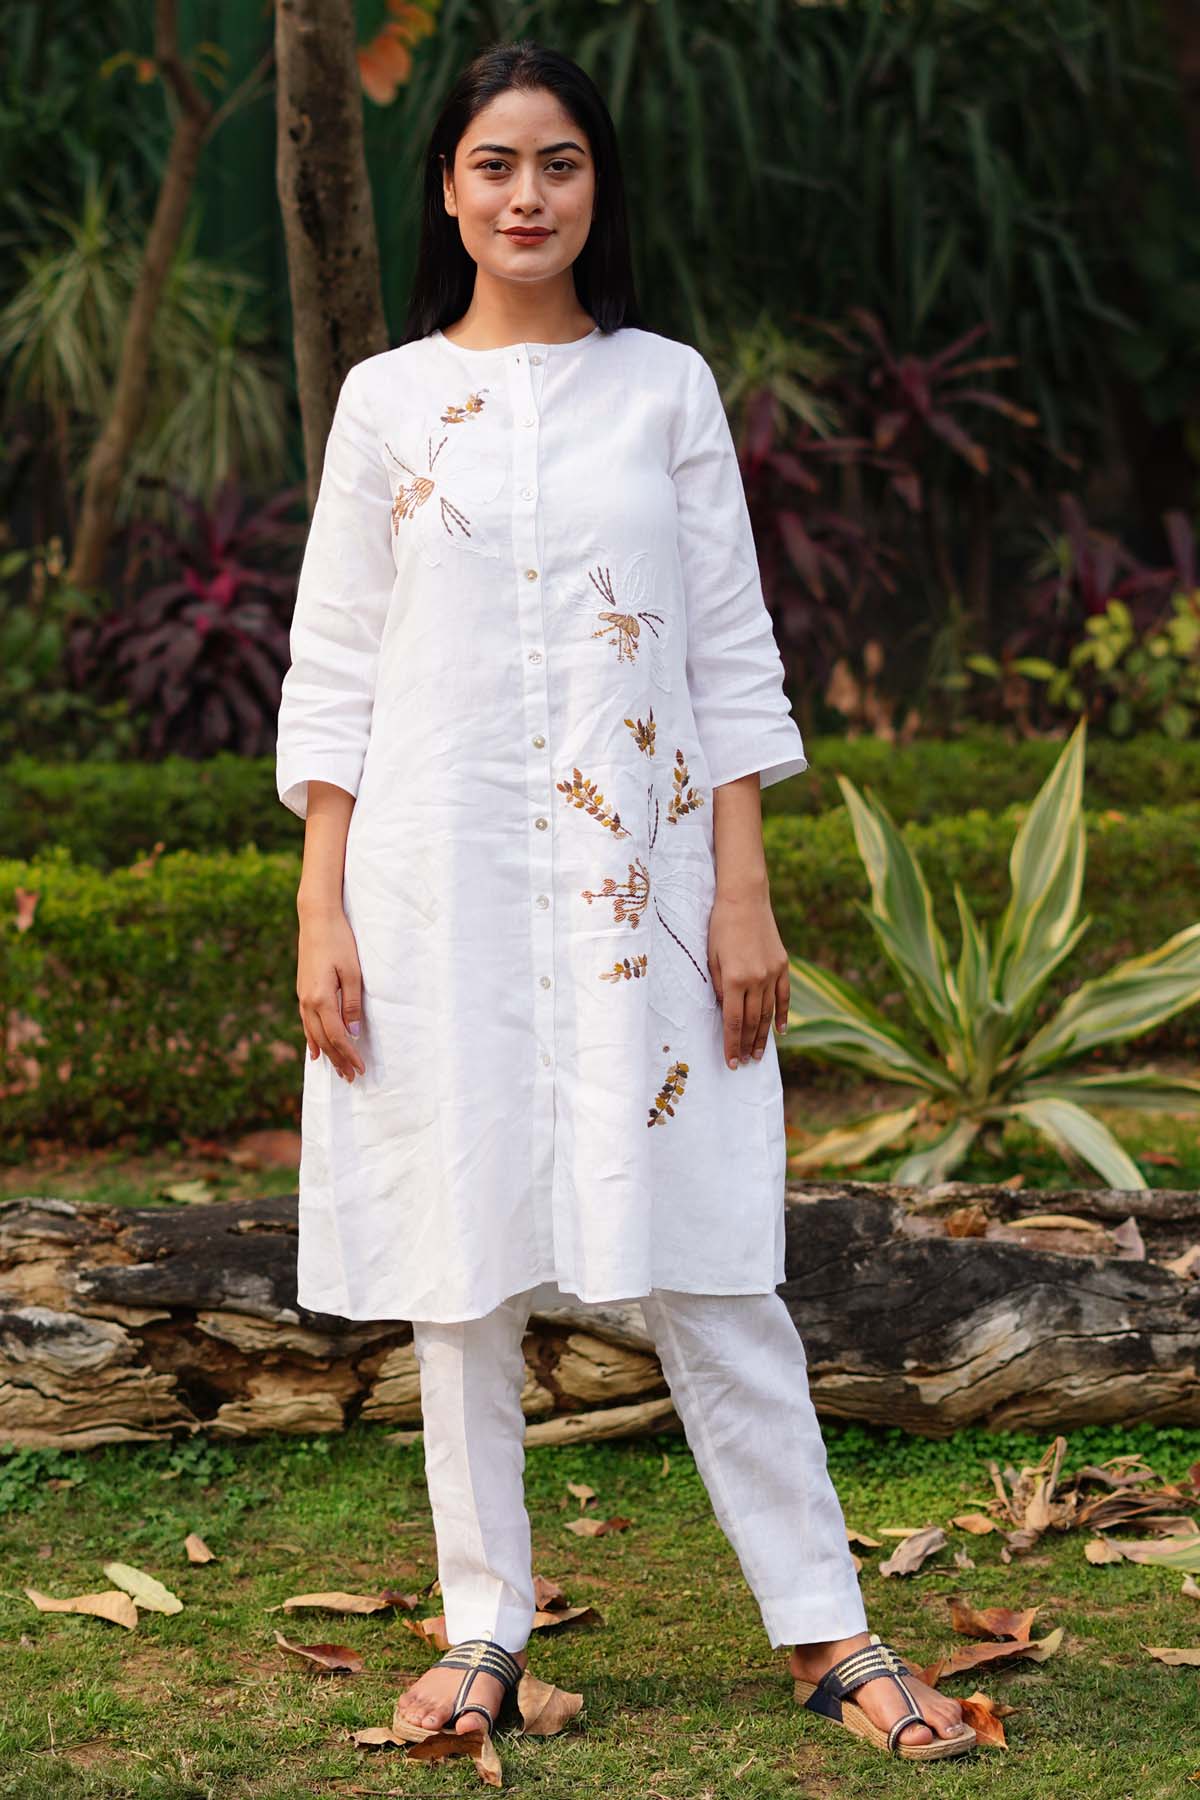 Designer Linen Bloom Timeless Elegance: White Linen Pencil Pants For Women Online at ScrollnShops